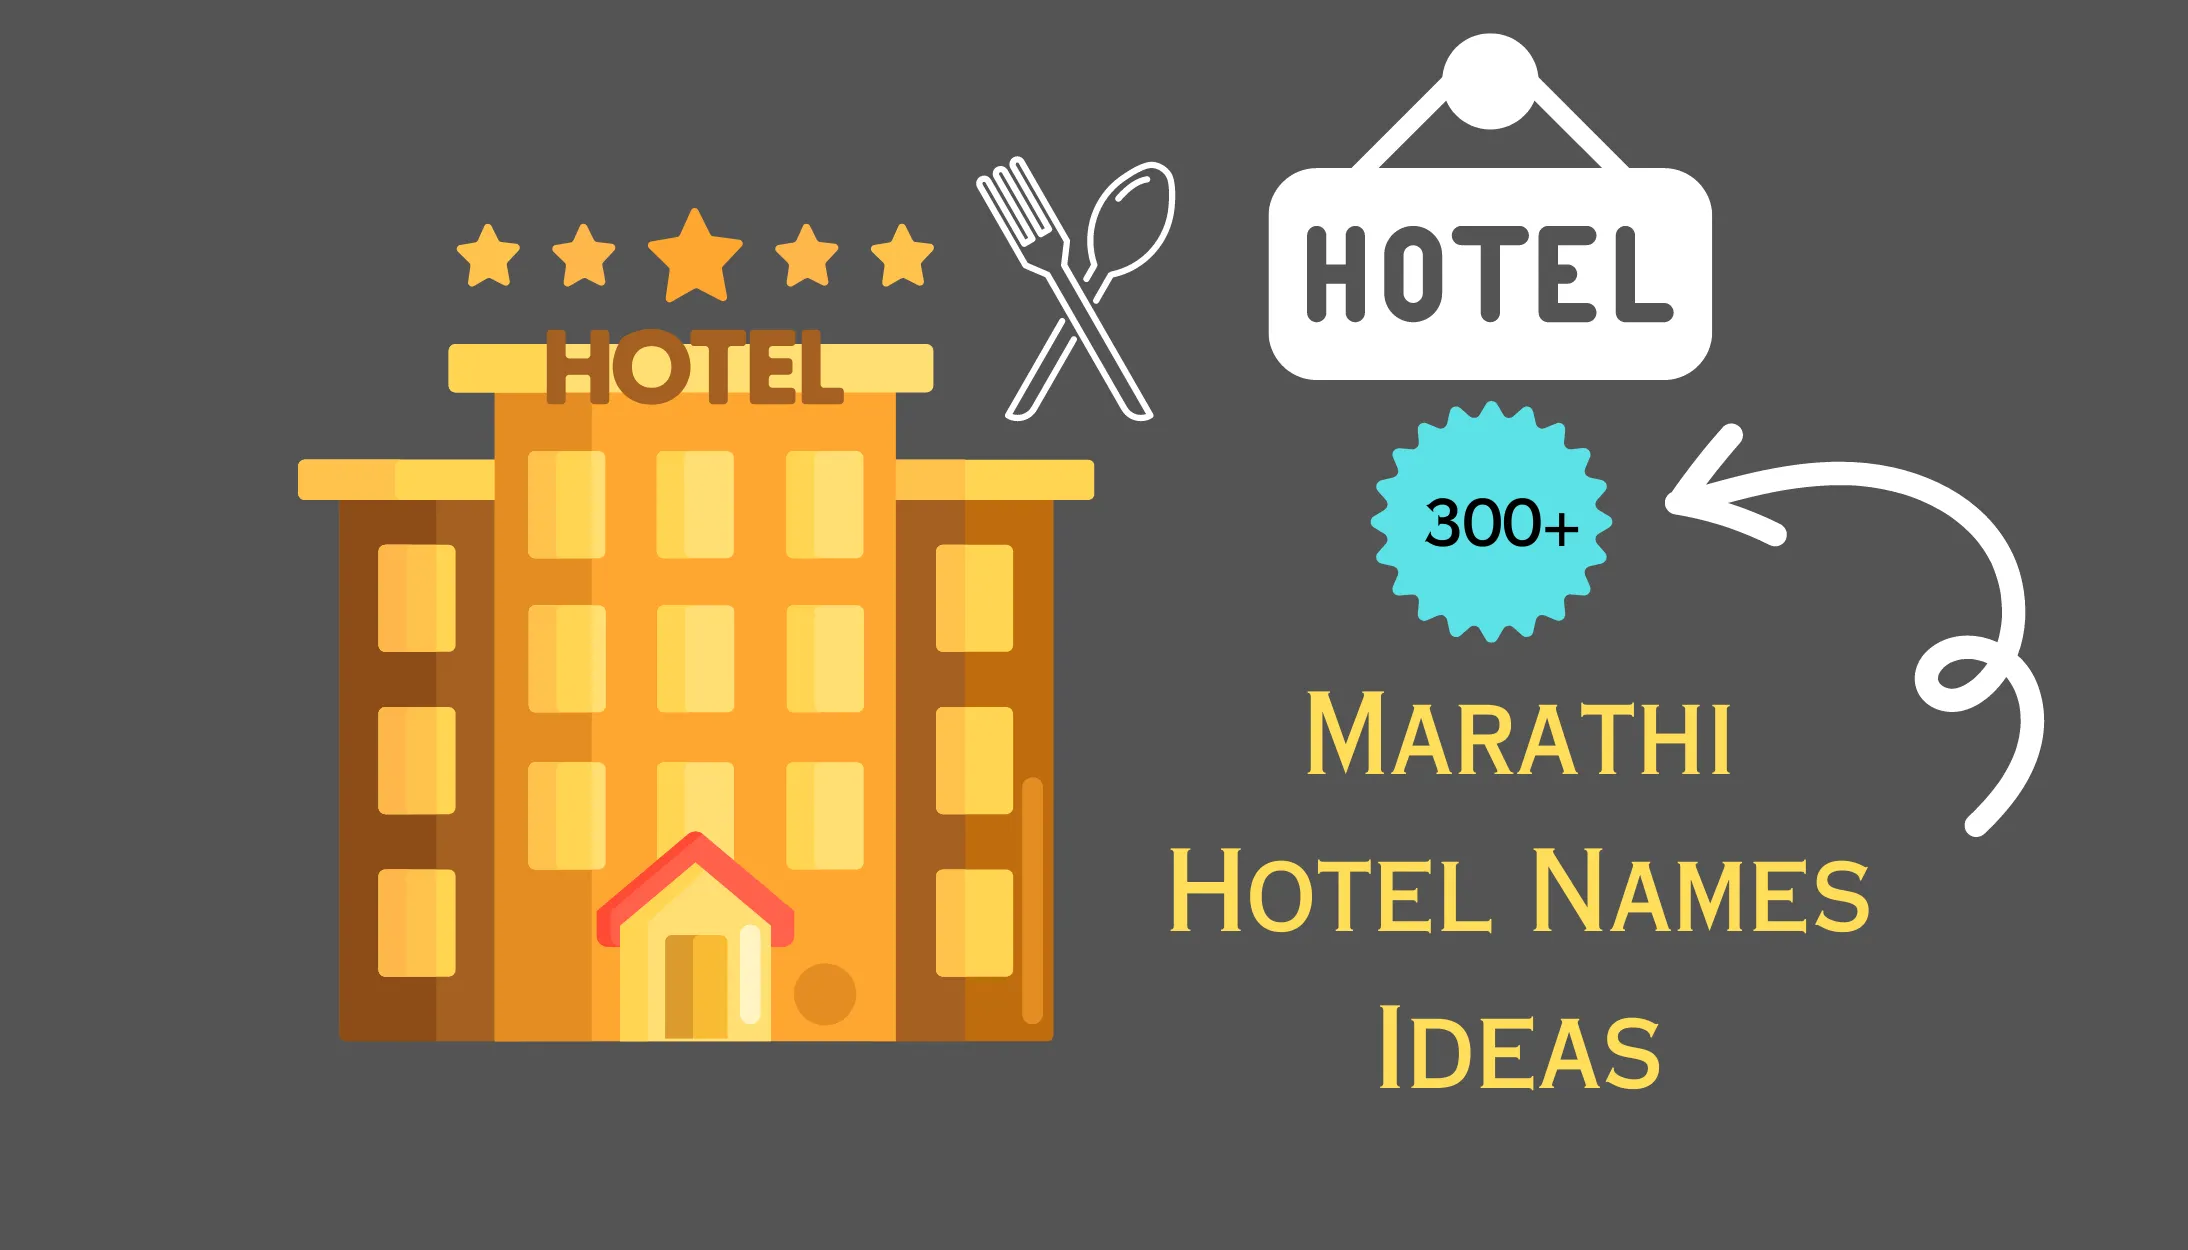 Marathi Hotel Names Ideas